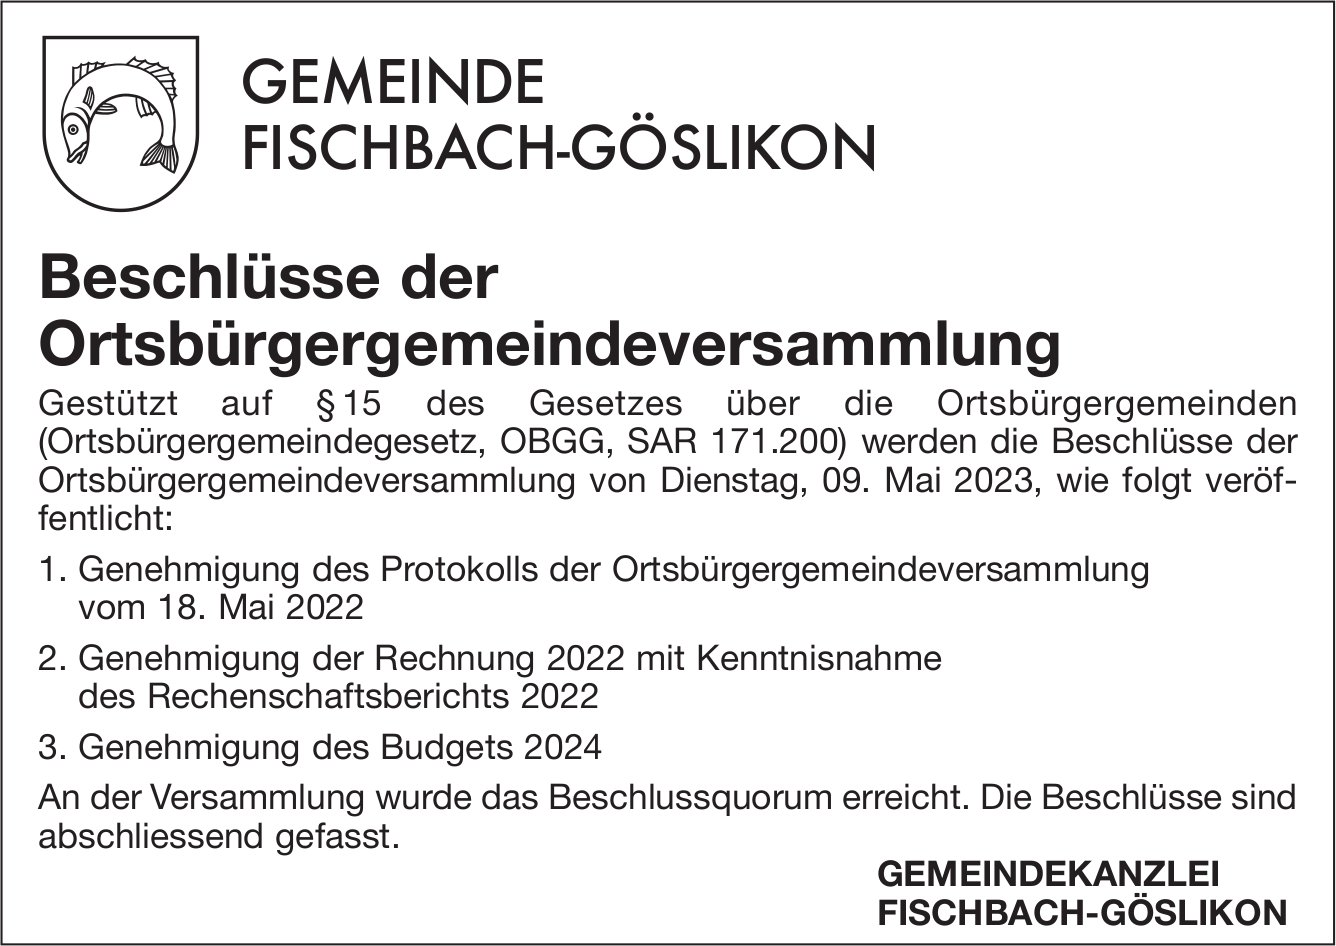 Fischbach-Göslikon - Beschlüsse der Ortsbürgergemeindeversammlung